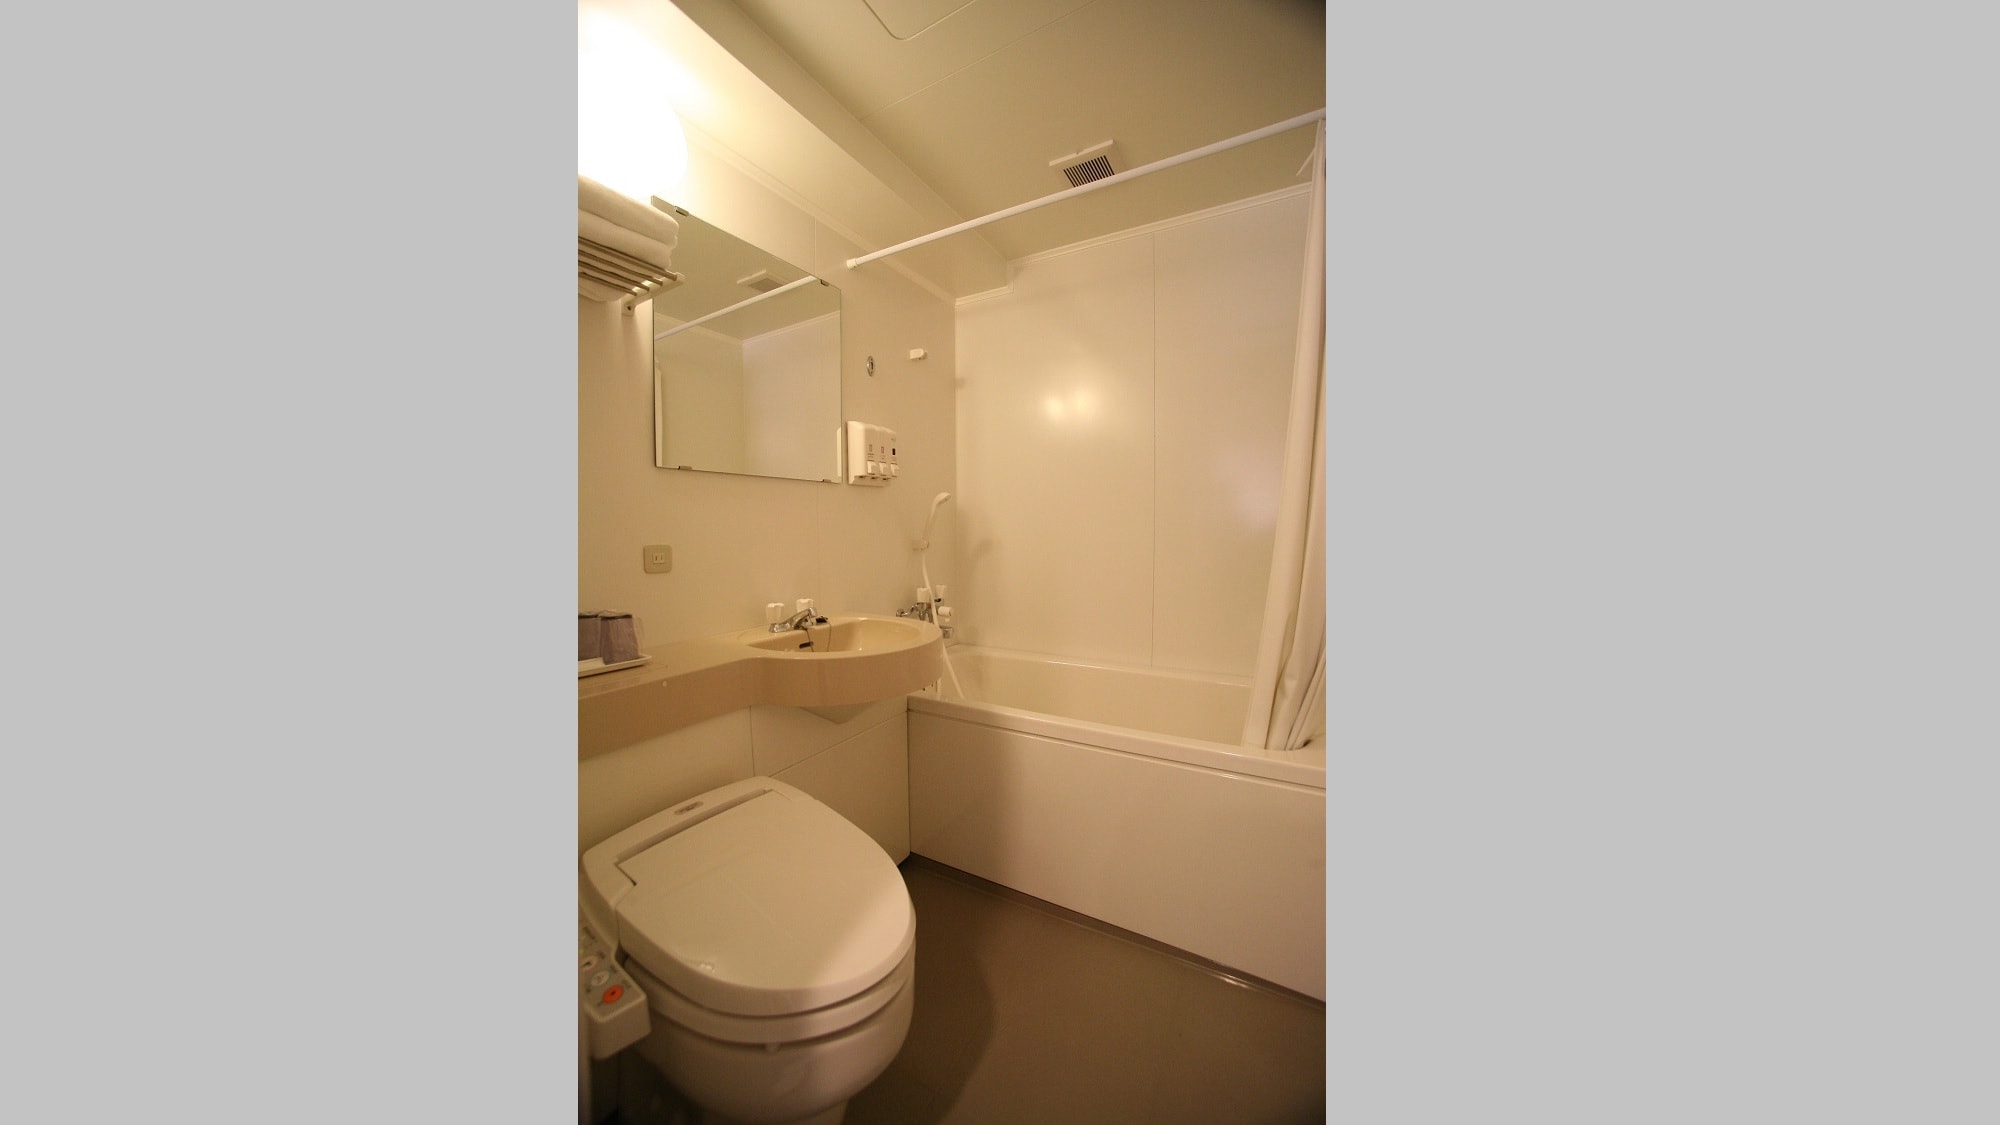 ◆ 客房單元浴室